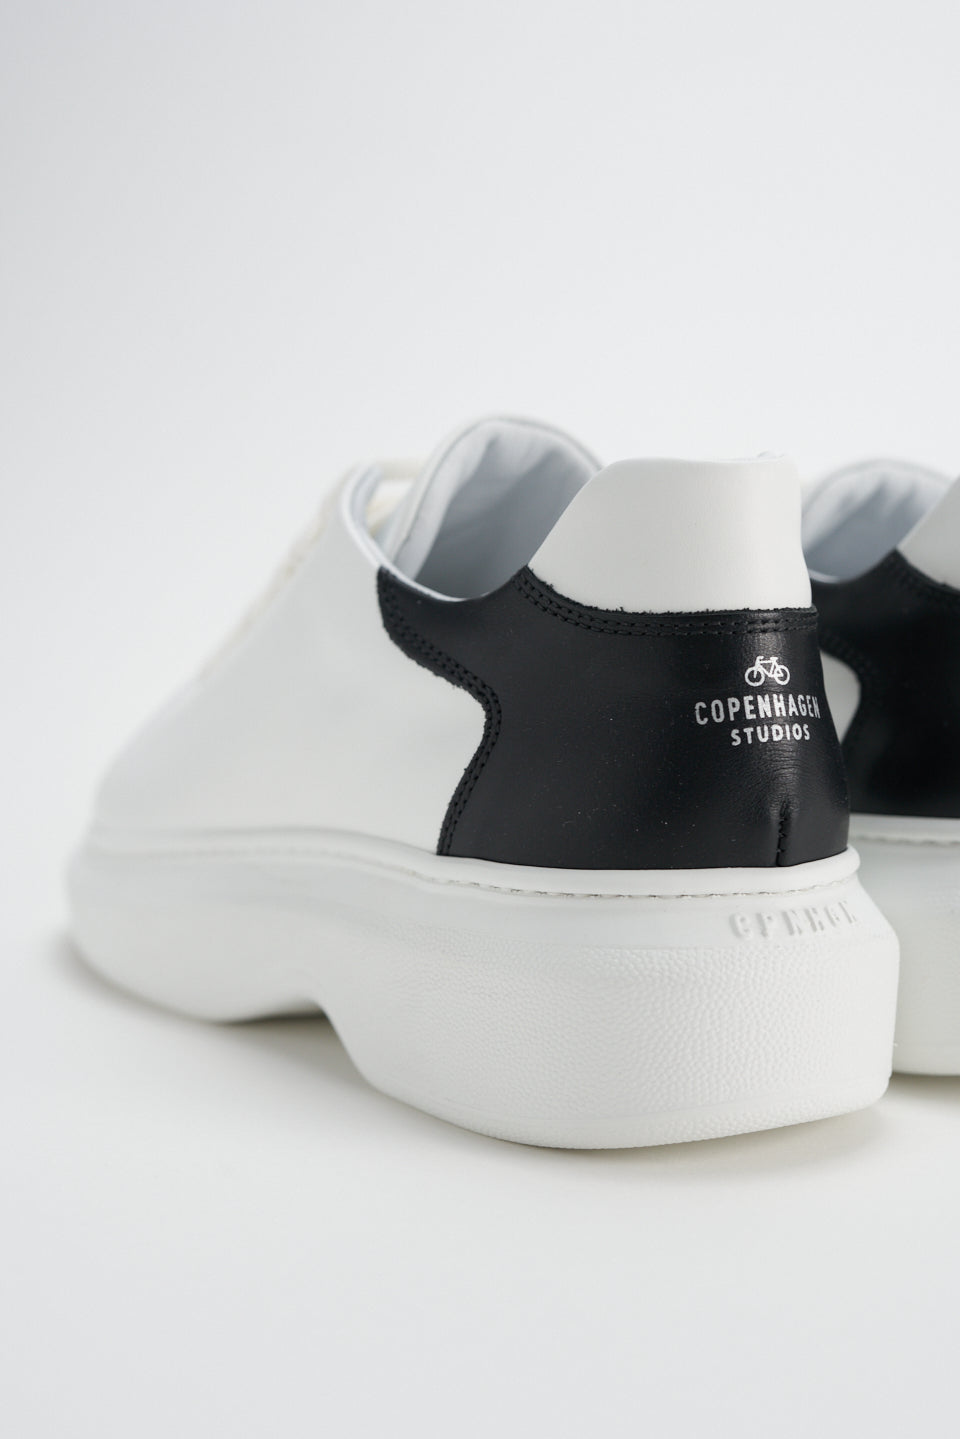 Vitello White Black Chunky Sneakers CPH812 - 8